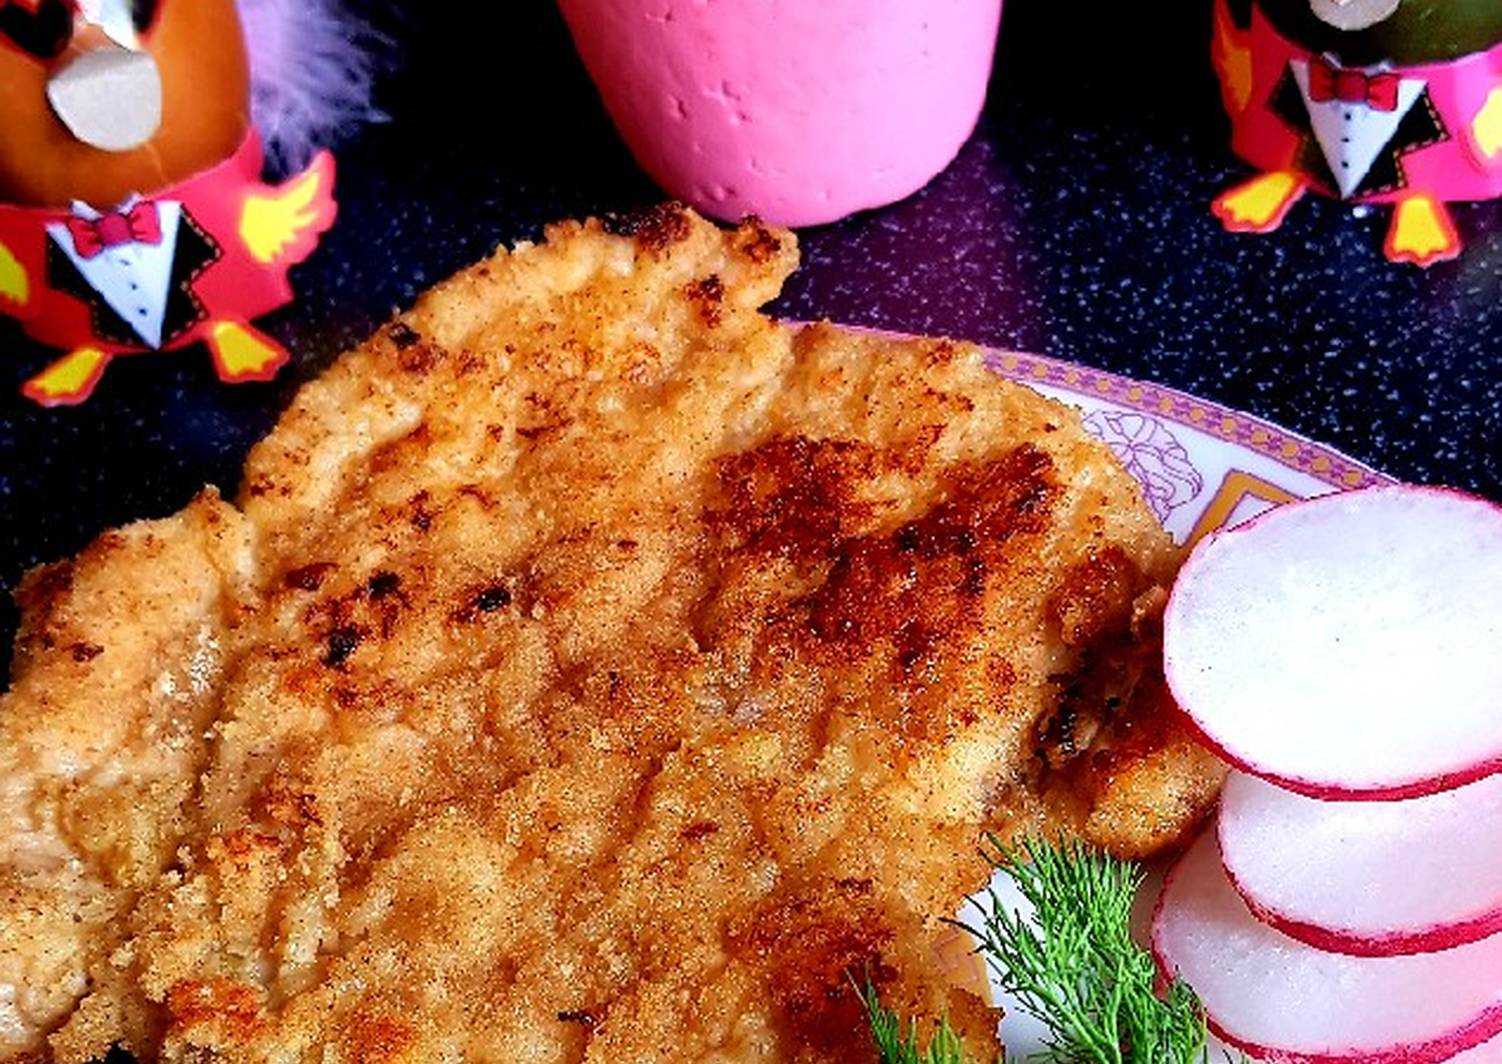 Как приготовить шницель из свинины по пошаговому рецепту с фото